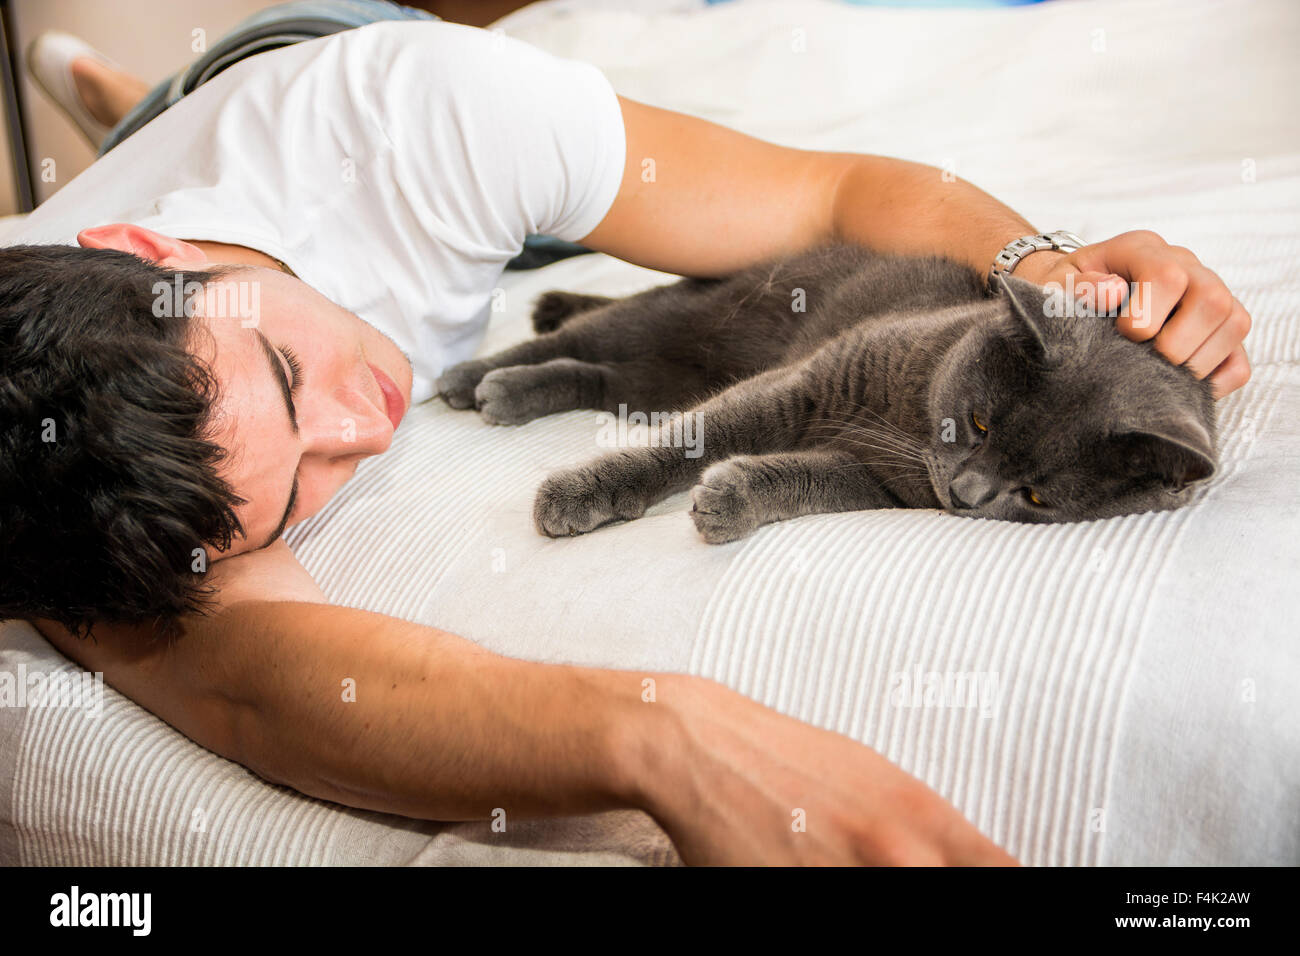 Bel giovane uomo Animal-Lover su un letto, avvolgente e coccole il suo grigio gatto domestico Pet. Foto Stock